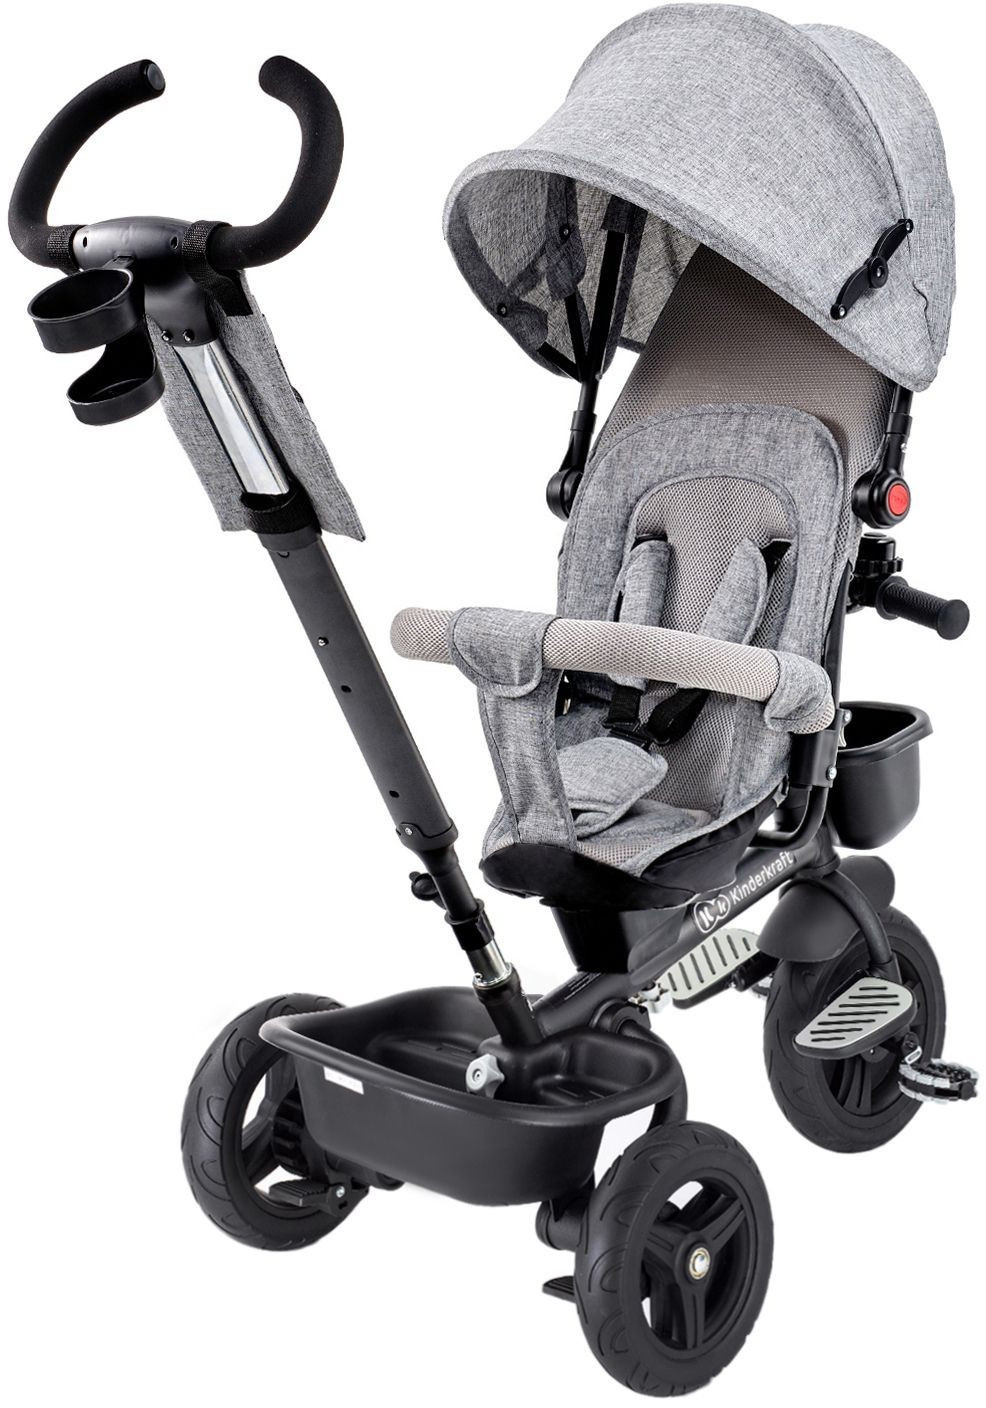 KinderKraft Dreirad Aveo 6 in1 Kinderdreirad Jogger mit Zubehör - Grau  (KKRAVEOGRY0000) online kaufen